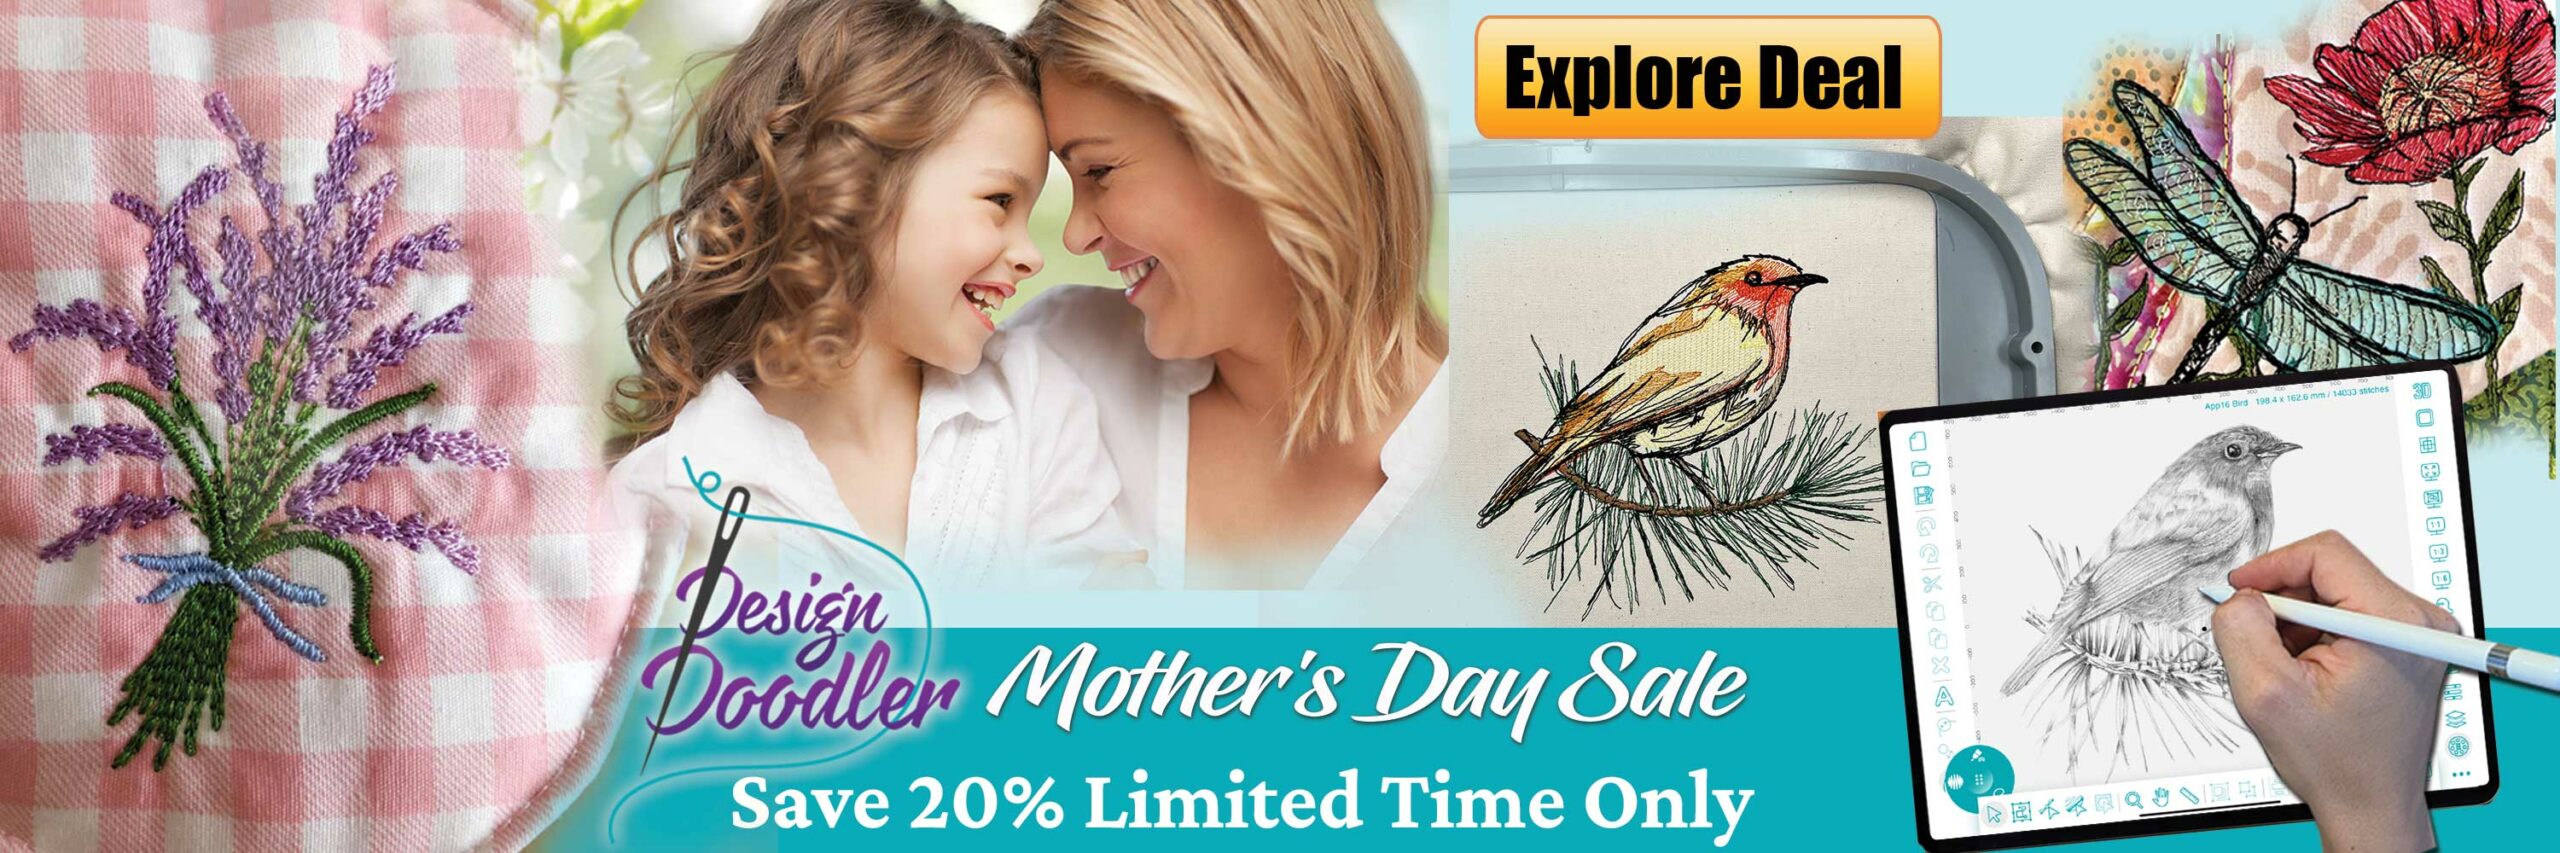 Design Doodler Mother's Day Sale - Desktop Banner